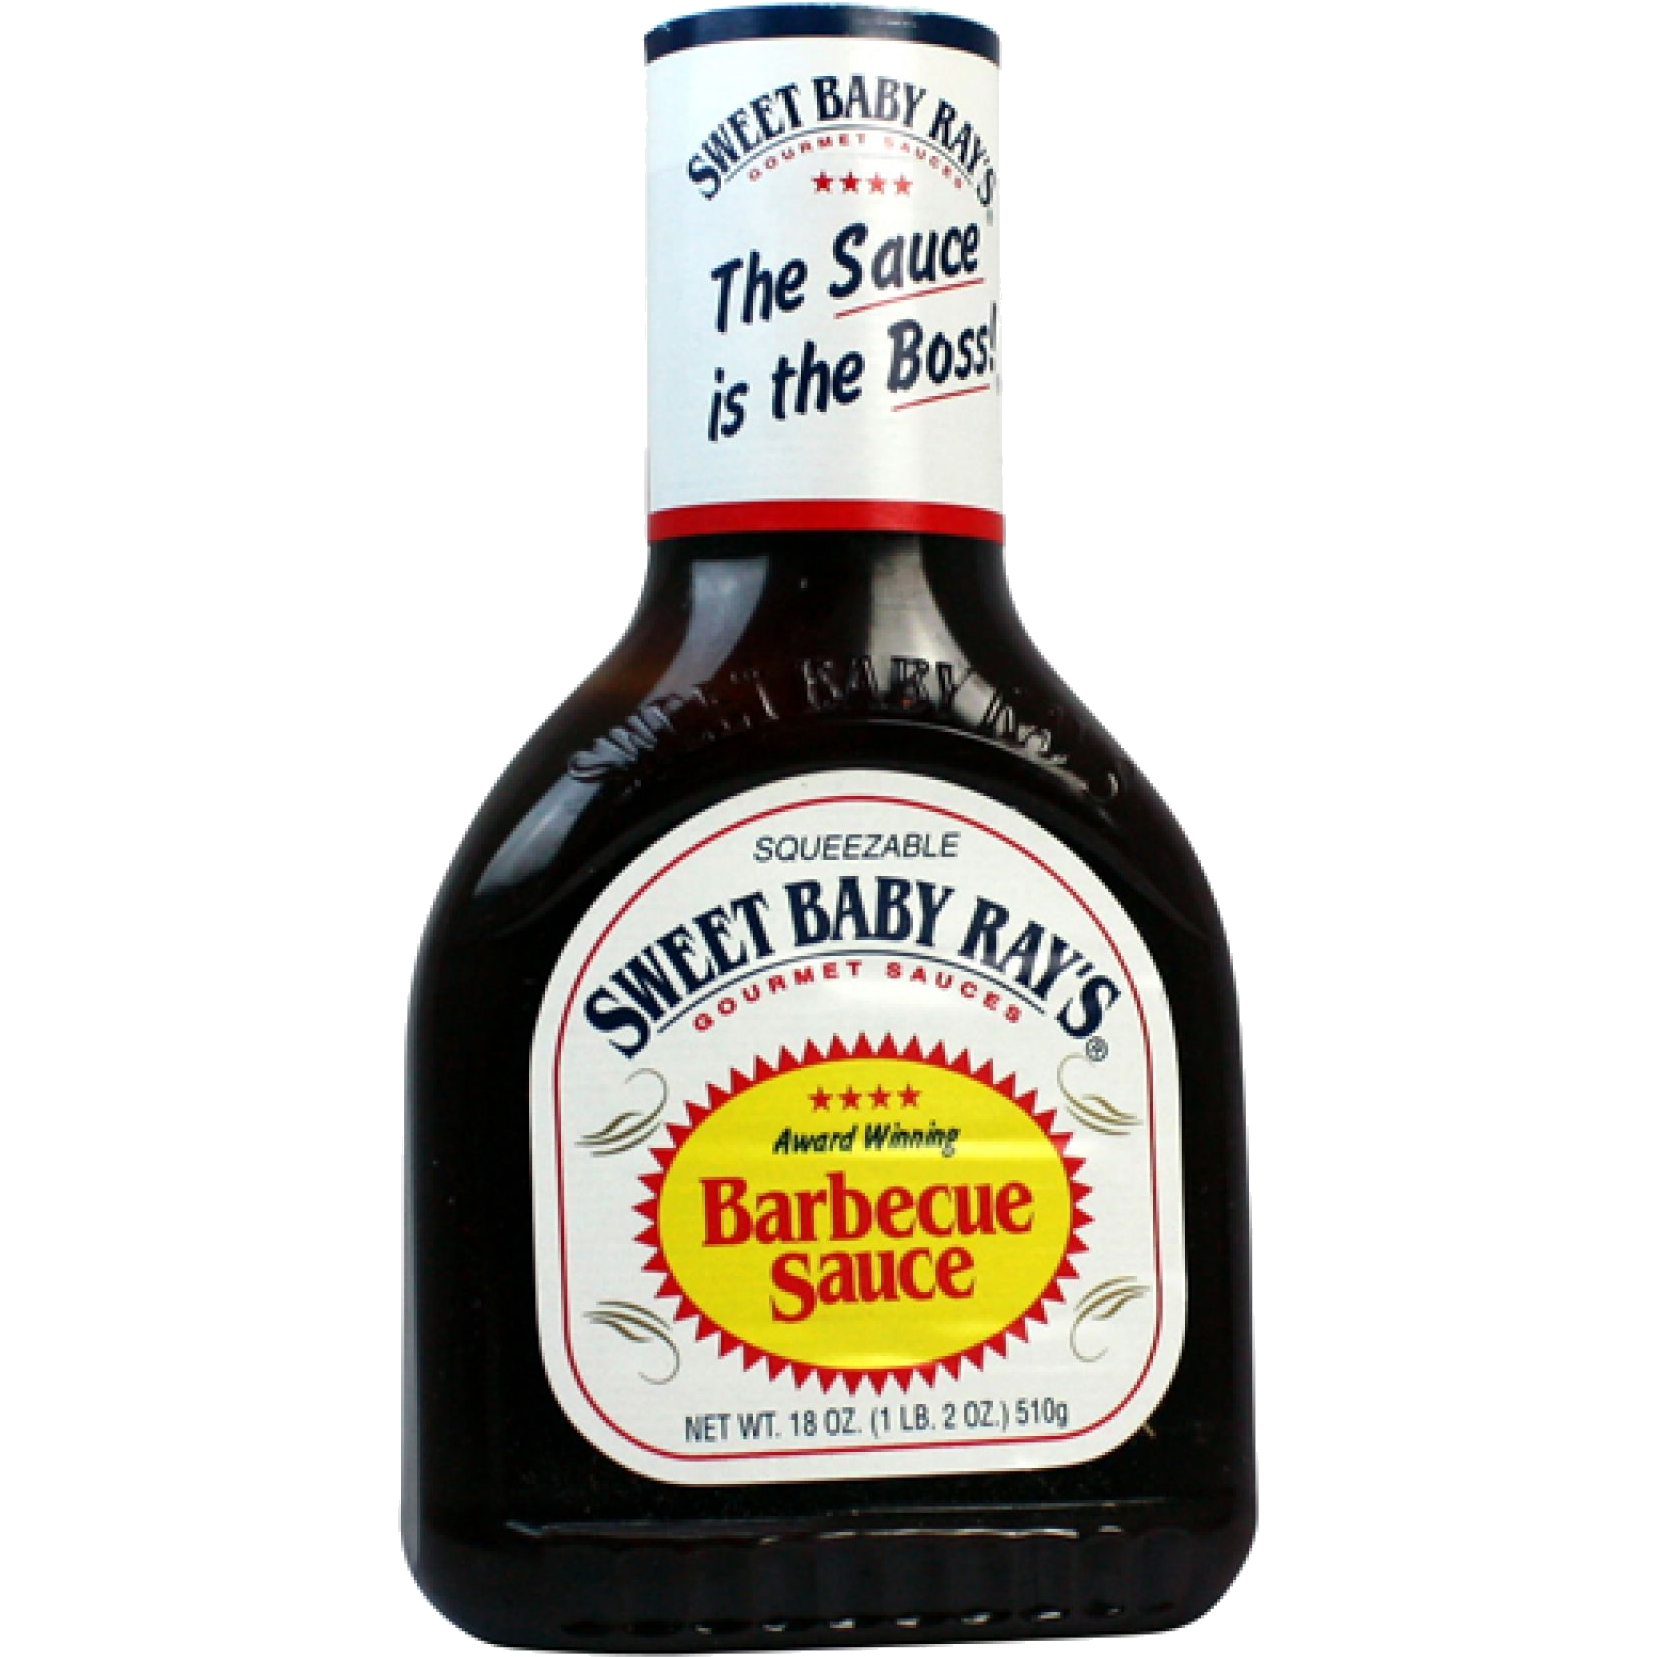 Sweet Baby Rays BBQ Sauce Original, 510g